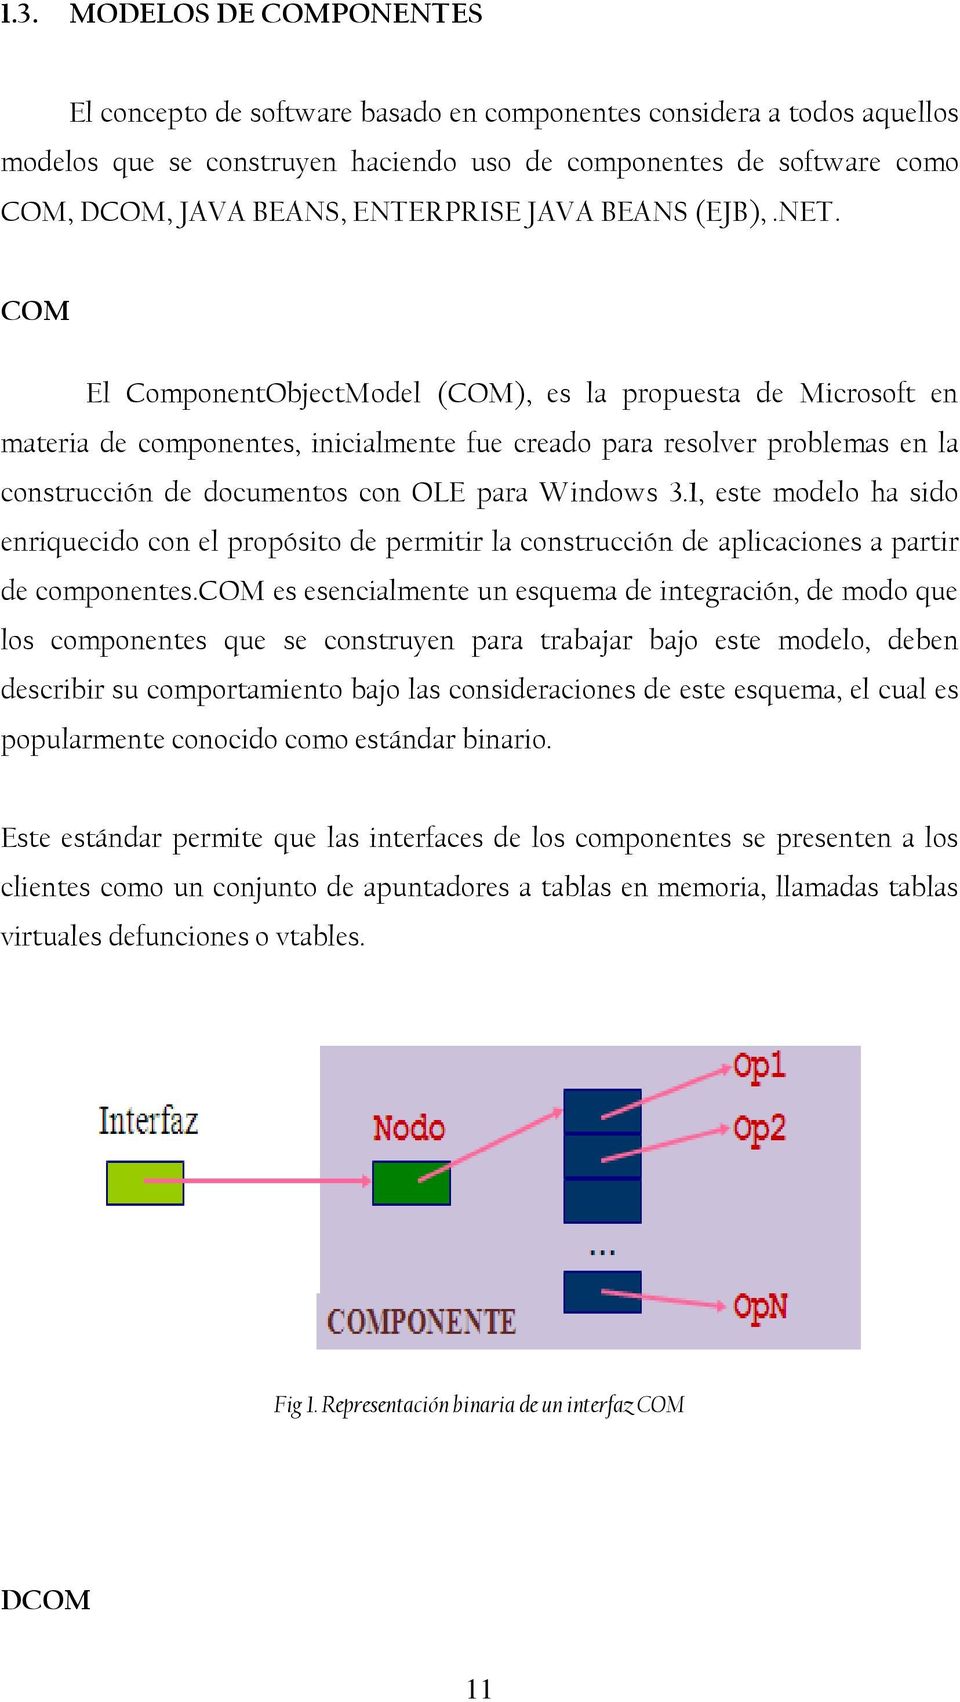 COM El ComponentObjectModel (COM), es la propuesta de Microsoft en materia de componentes, inicialmente fue creado para resolver problemas en la construcción de documentos con OLE para Windows 3.